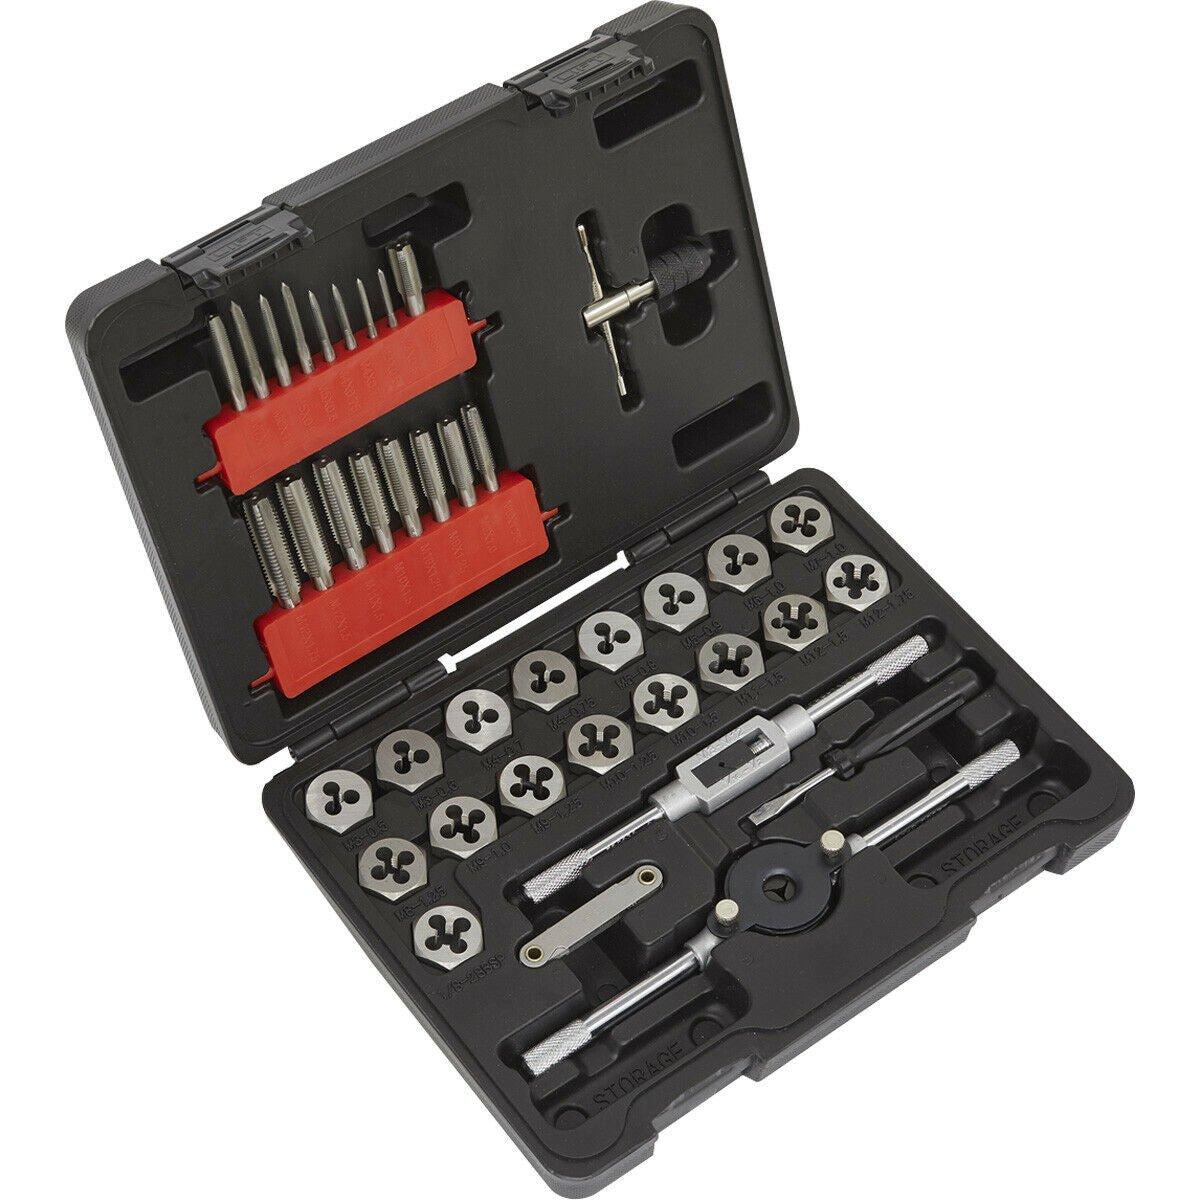 39pc Metric Tap & Hex Die Set - M3 to M12 - Manual Bar & Socket Threading Tool